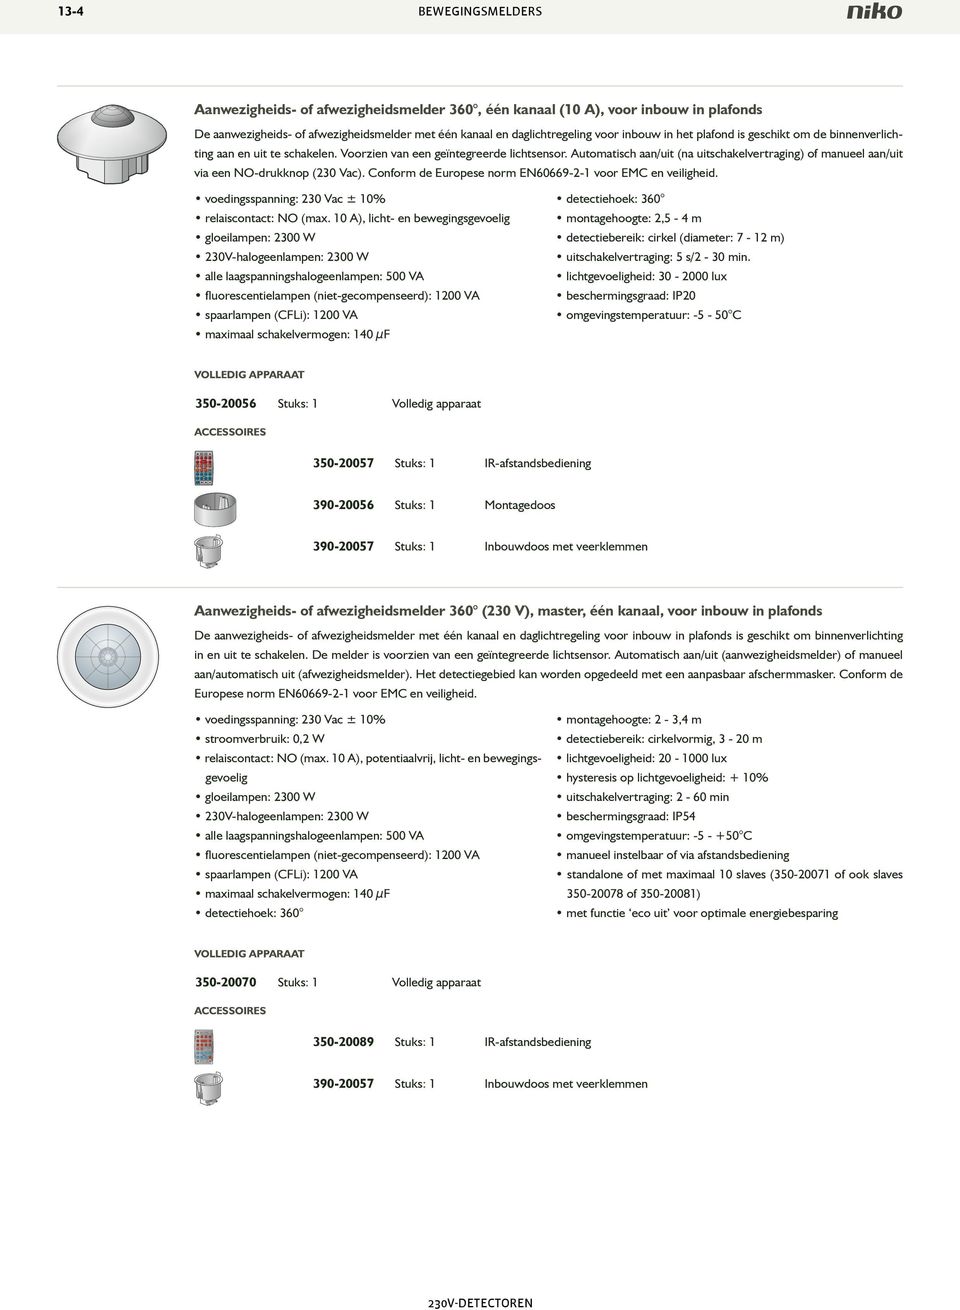 Automatisch aan/uit (na uitschakelvertraging) of manueel aan/uit via een O-drukknop (230 Vac). Conform de Europese norm E60669-2-1 voor EMC en veiligheid. relaiscontact: O (max.